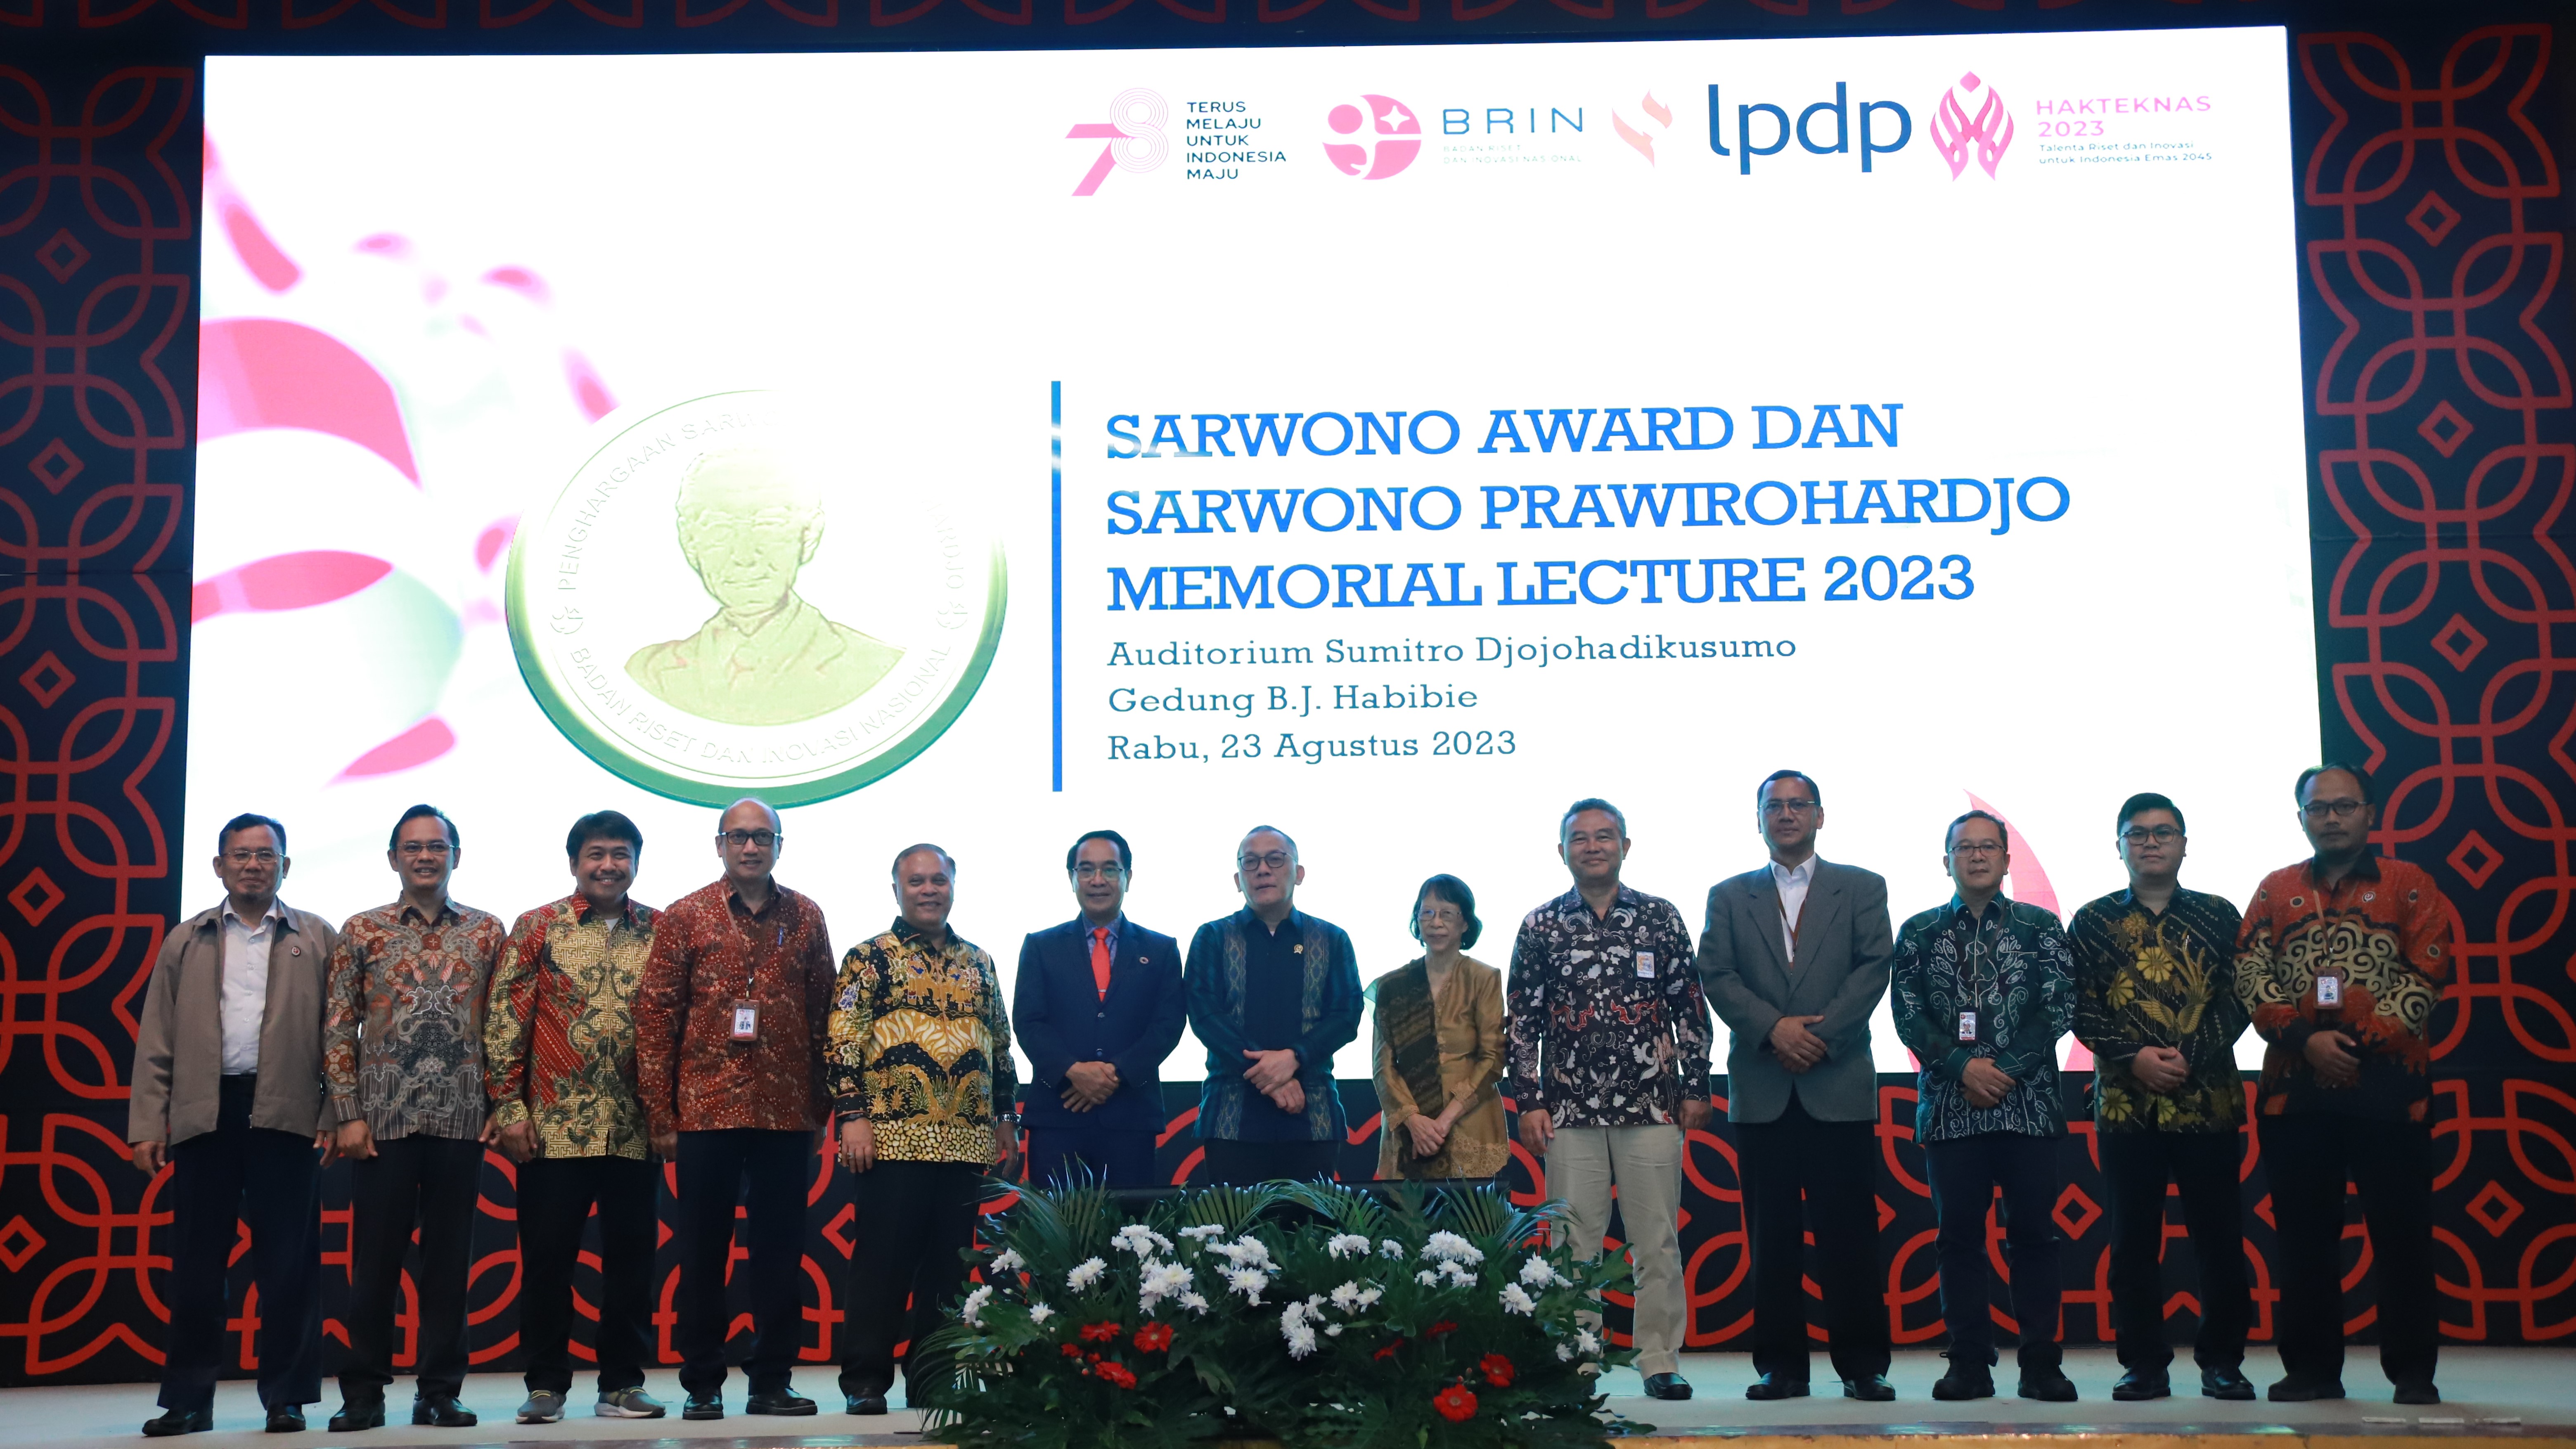 Pertama Kalinya LPDP Ikut Berikan Sarwono Award 2023, Wujud Apresiasi Tinggi kepada Ilmuwan